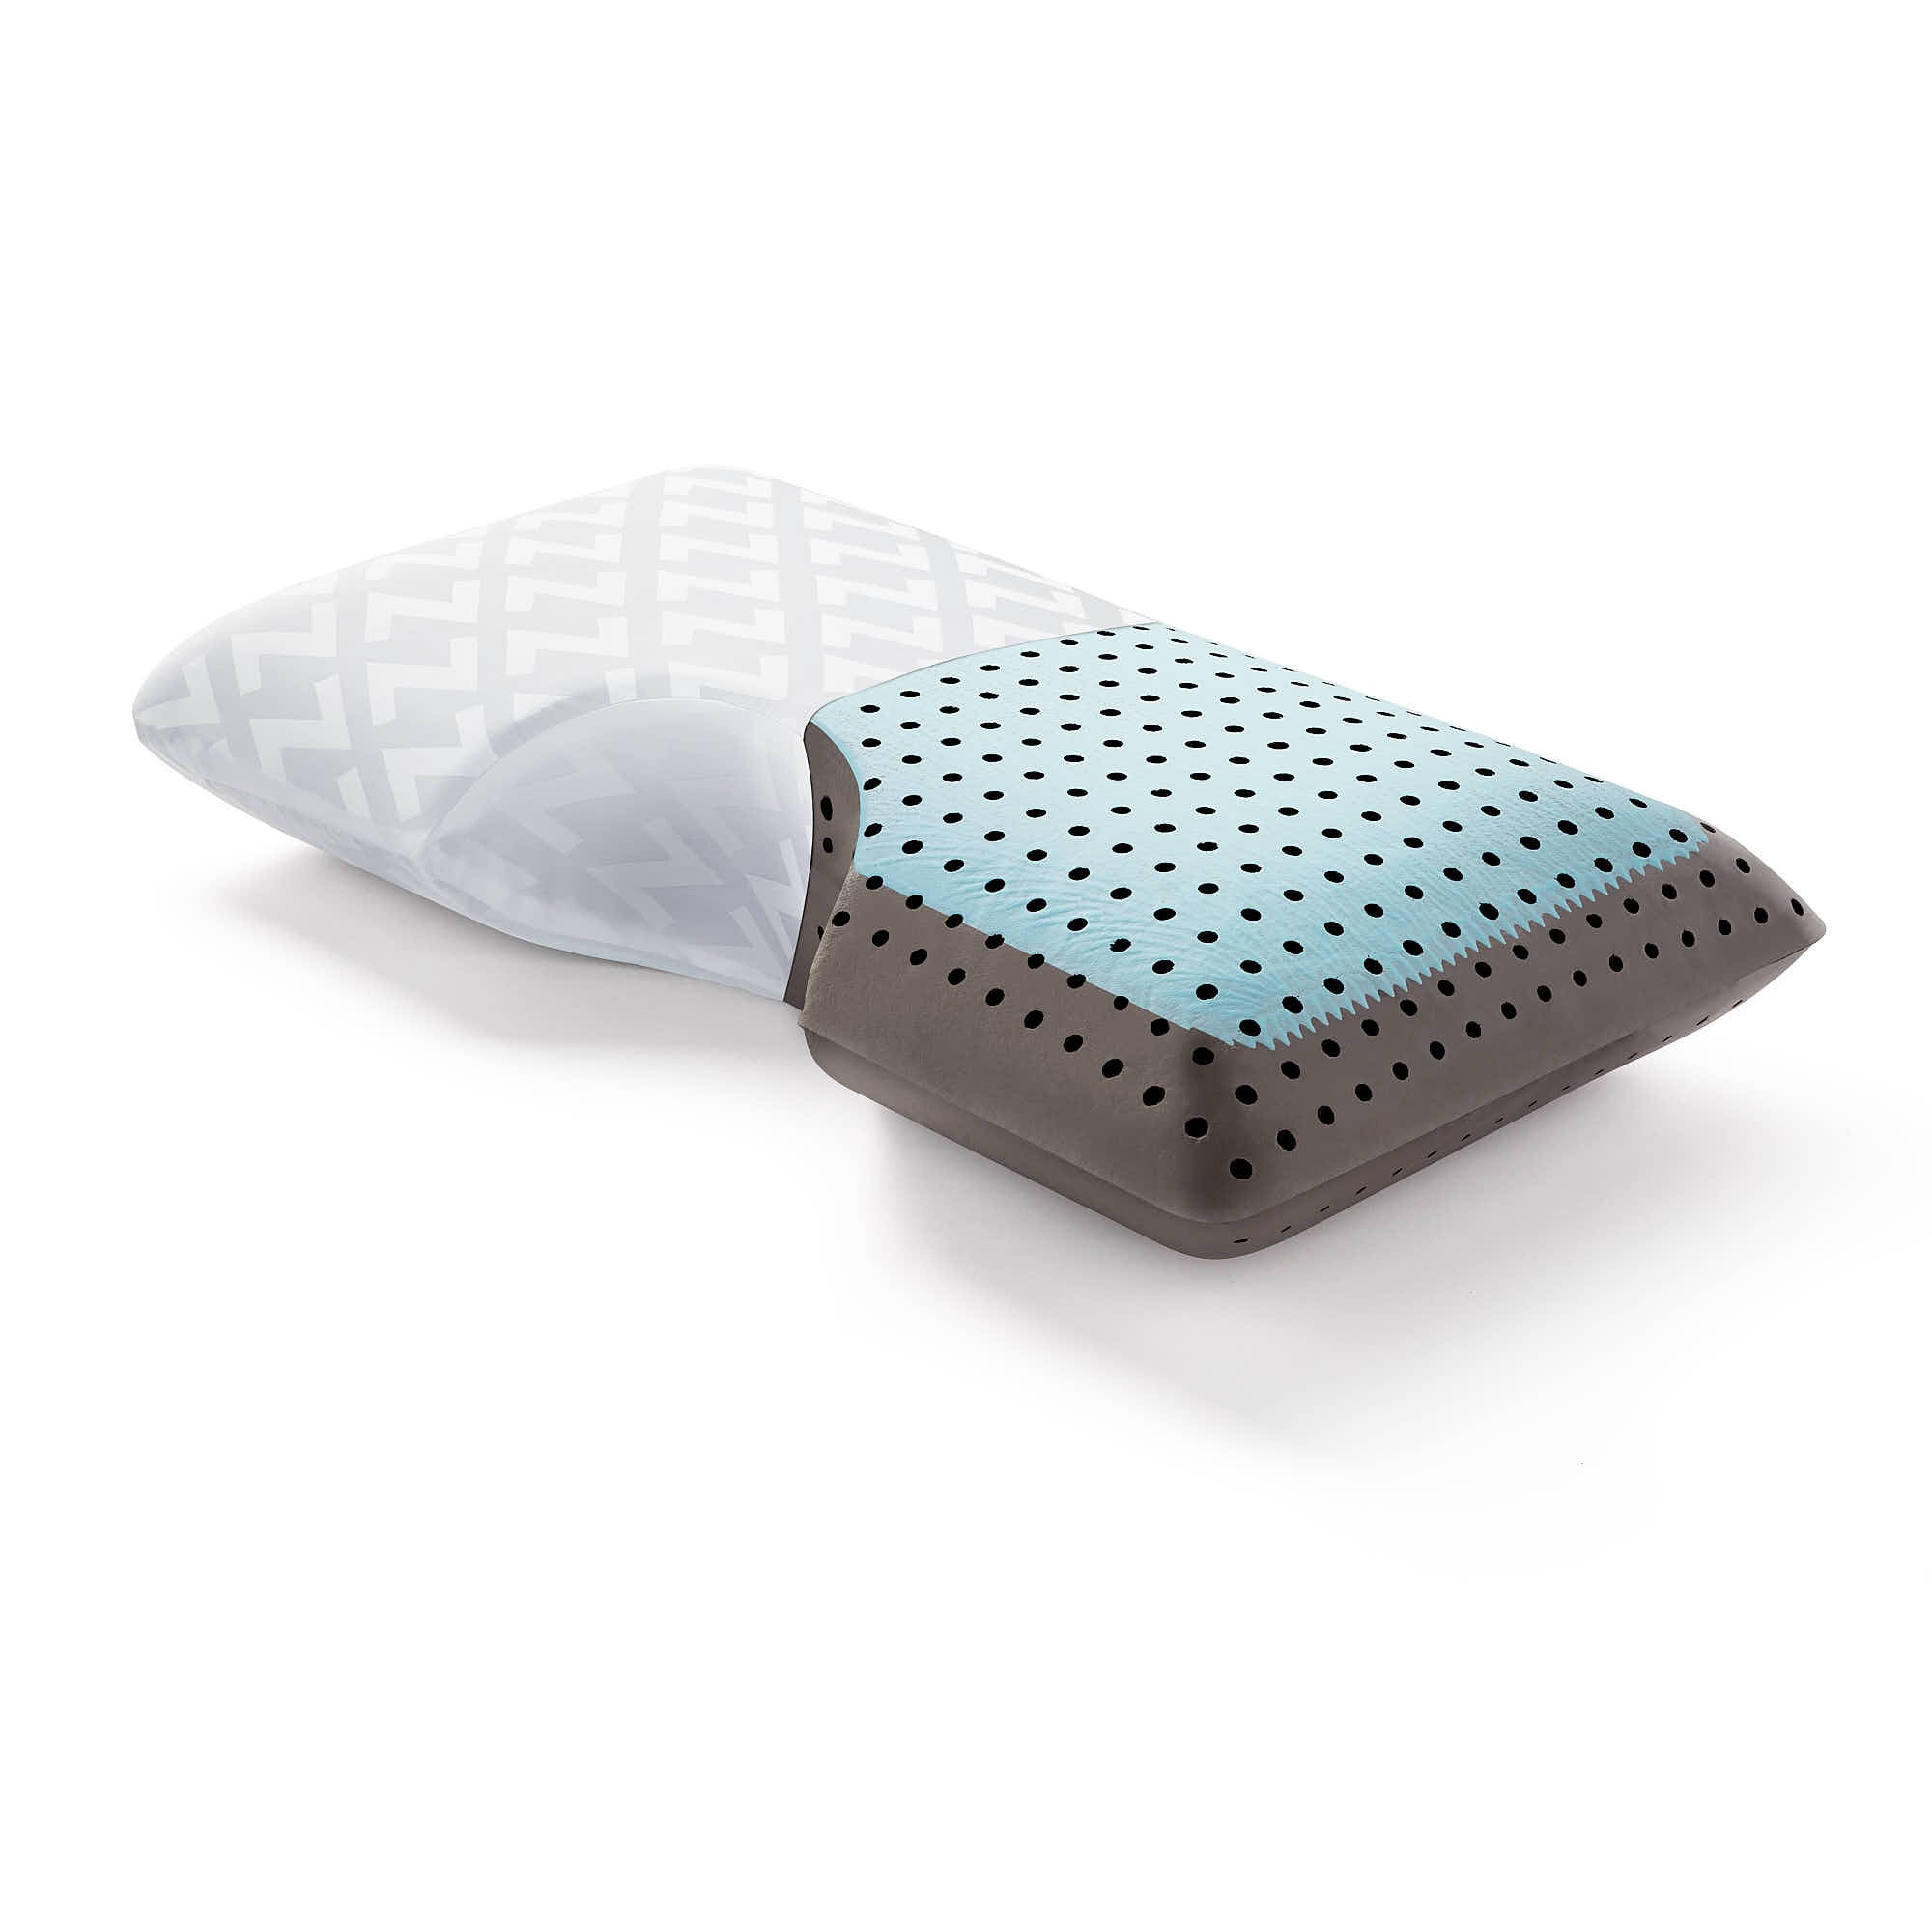 Shoulder CarbonCool™ LT + Omniphase® Pillow